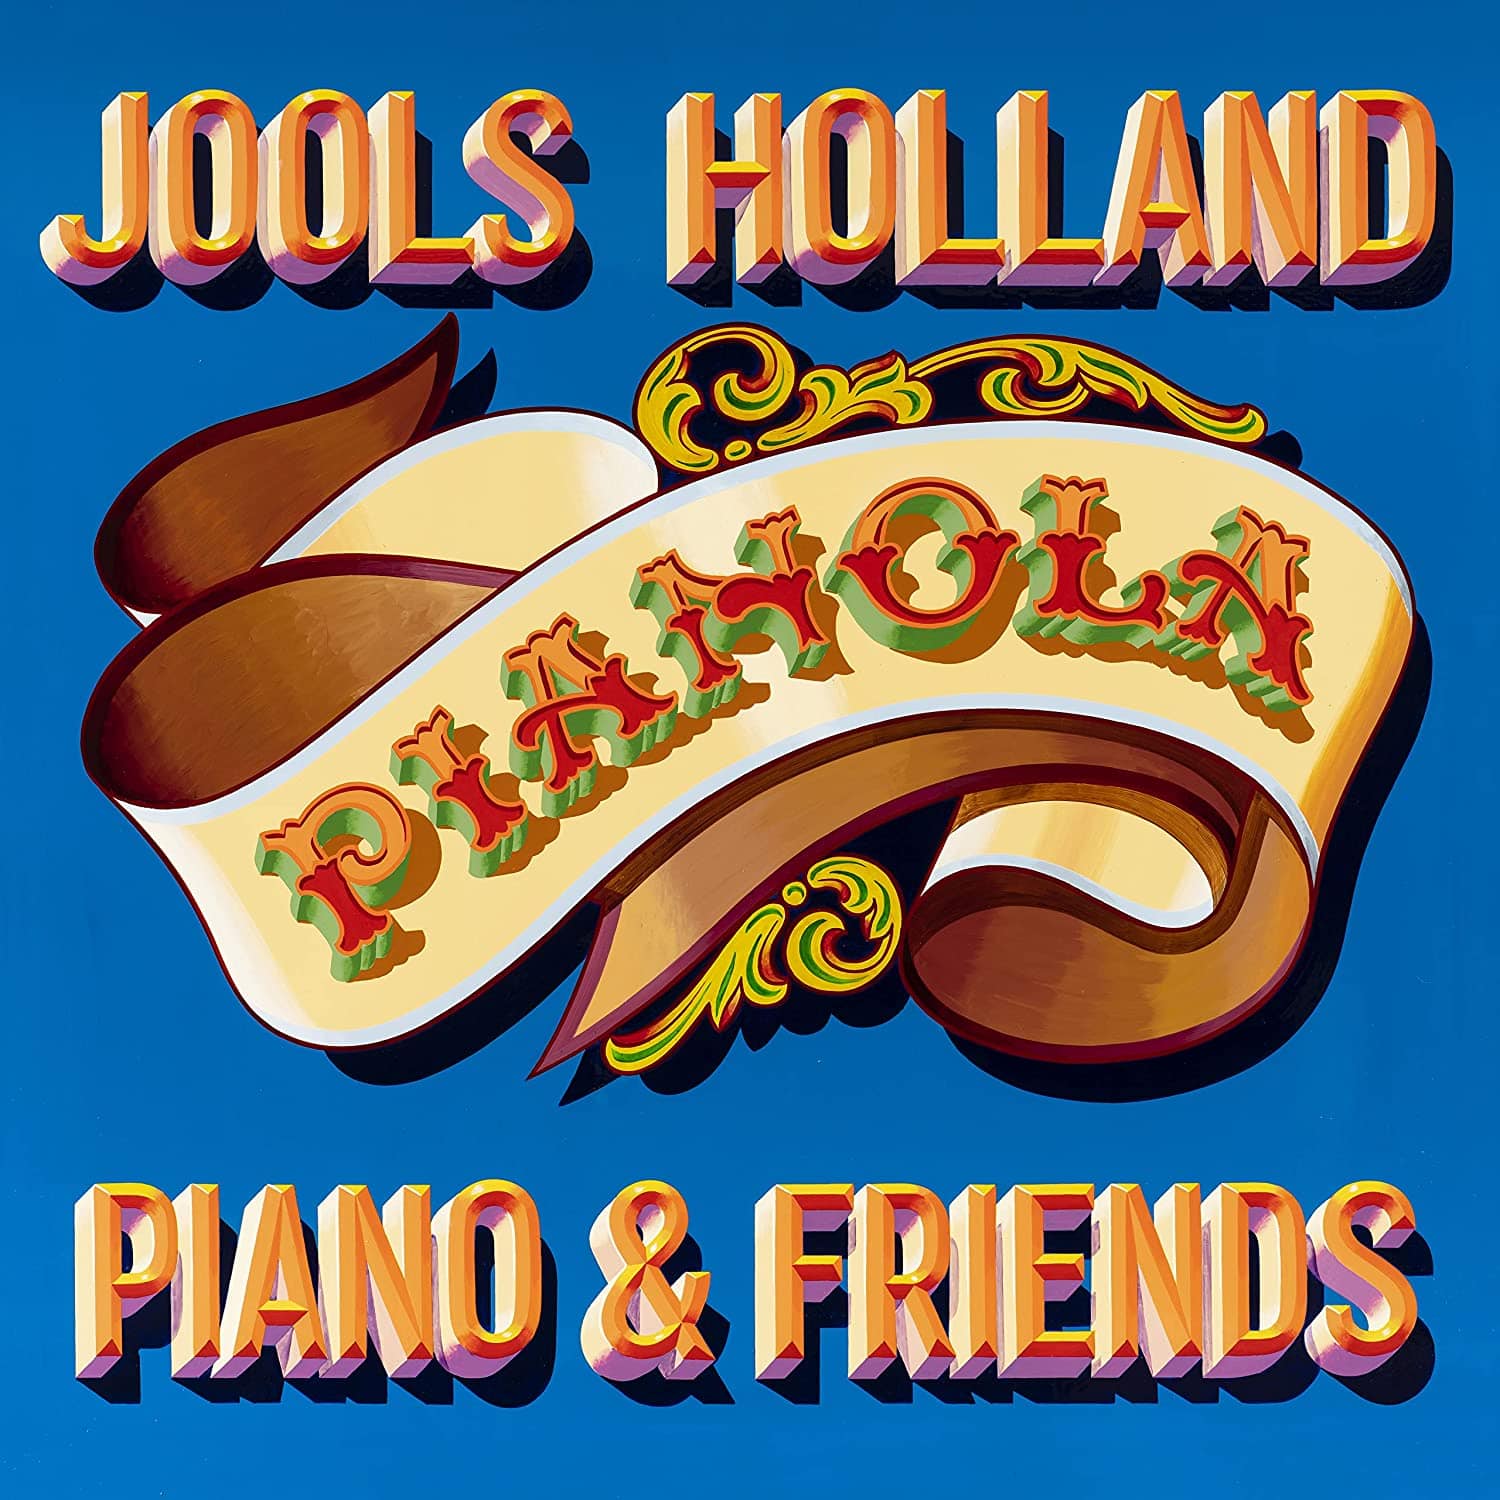 PIANOLA, PIANO & FRIENDS: - JOOLS HOLLAND [VINYL]